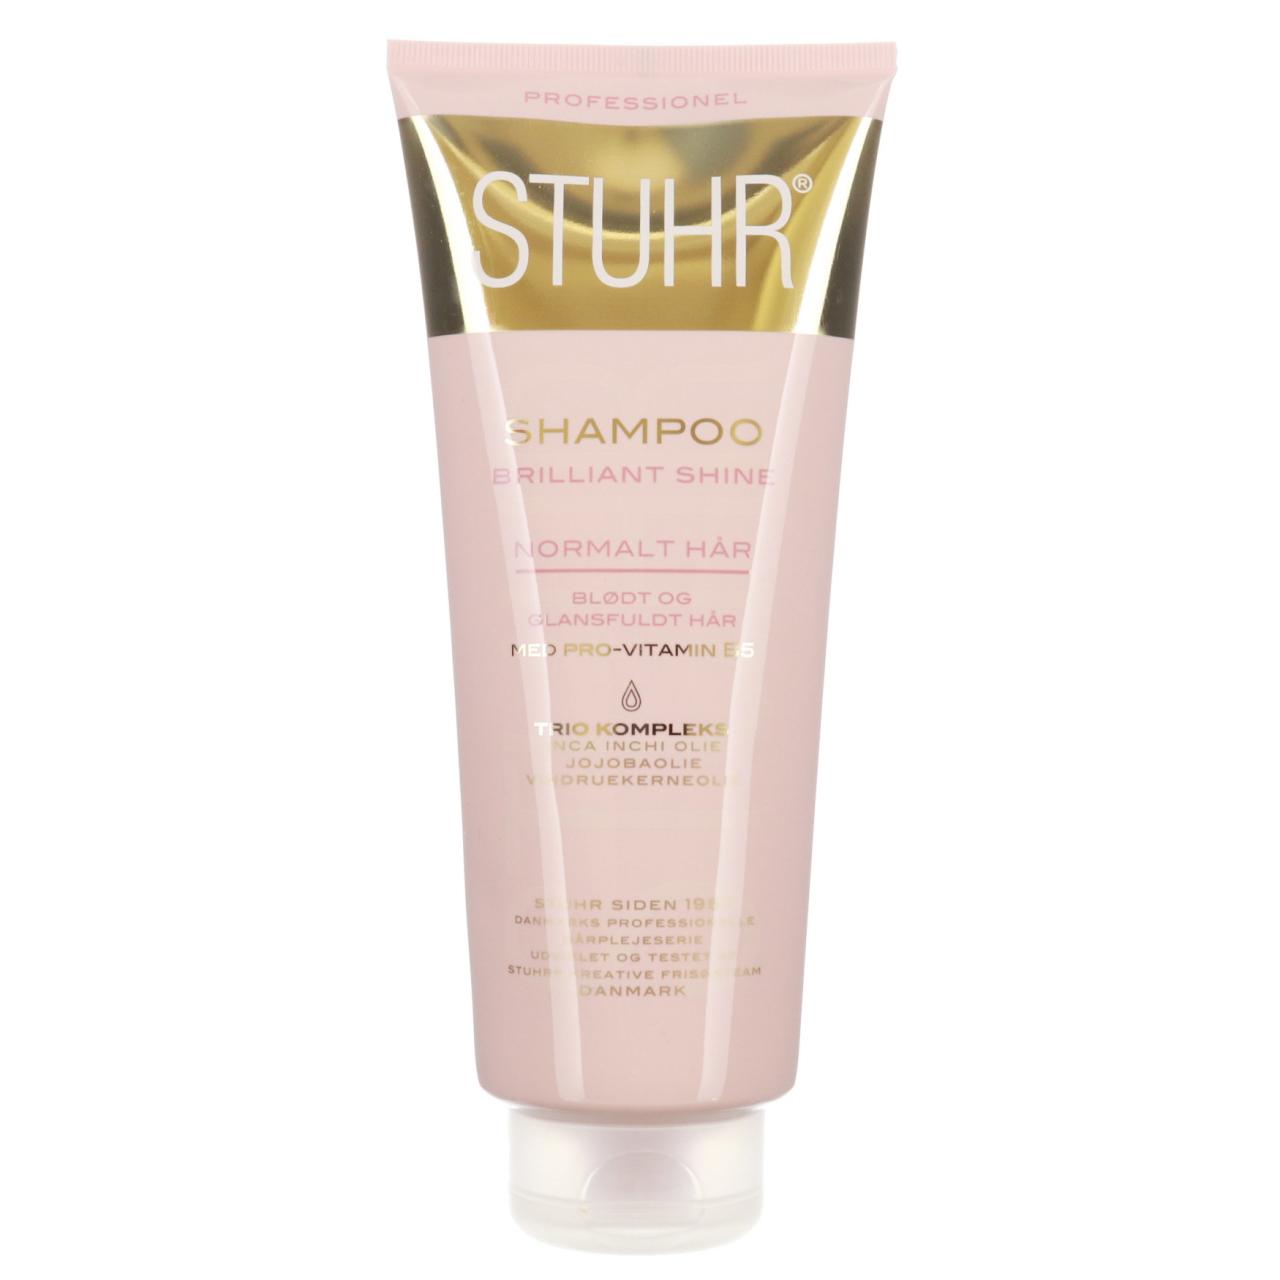 STUHR Brilliant Shine Shampoo 350ml